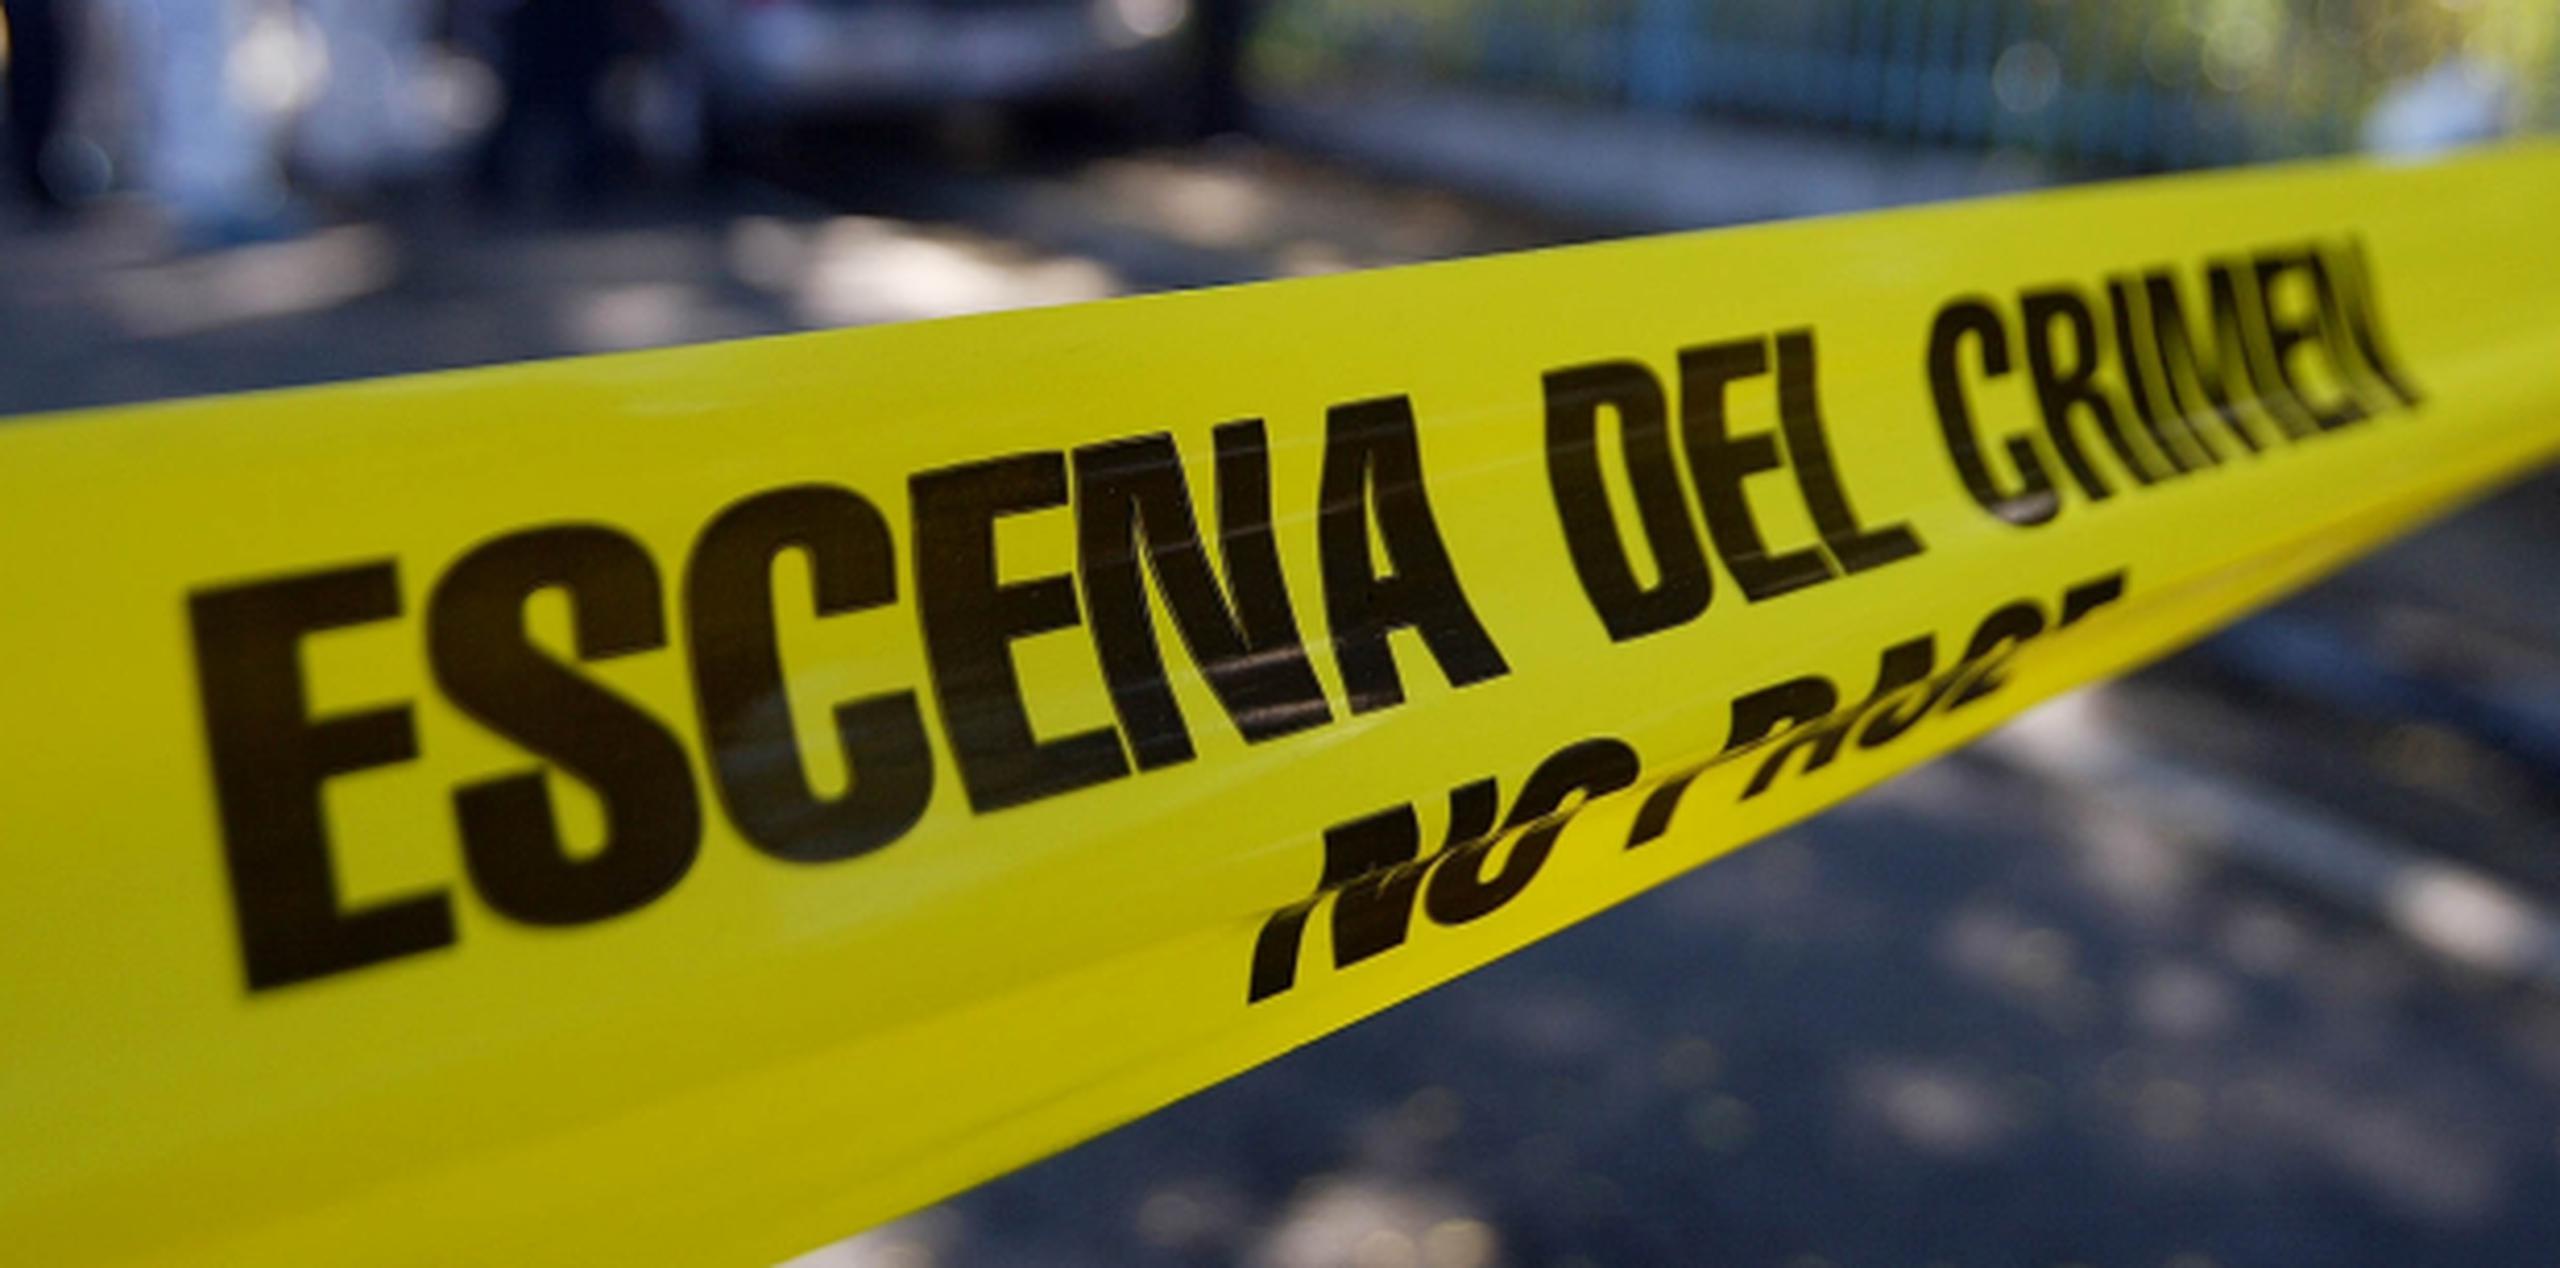 José R. Ortiz Benítez, de 56 años, se encontraba frente a un negocio localizado en la barriada Roosevelt, en San Lorenzo, donde sicarios a bordo de un automóvil le dispararon en repetidas ocasiones. (Archivo)